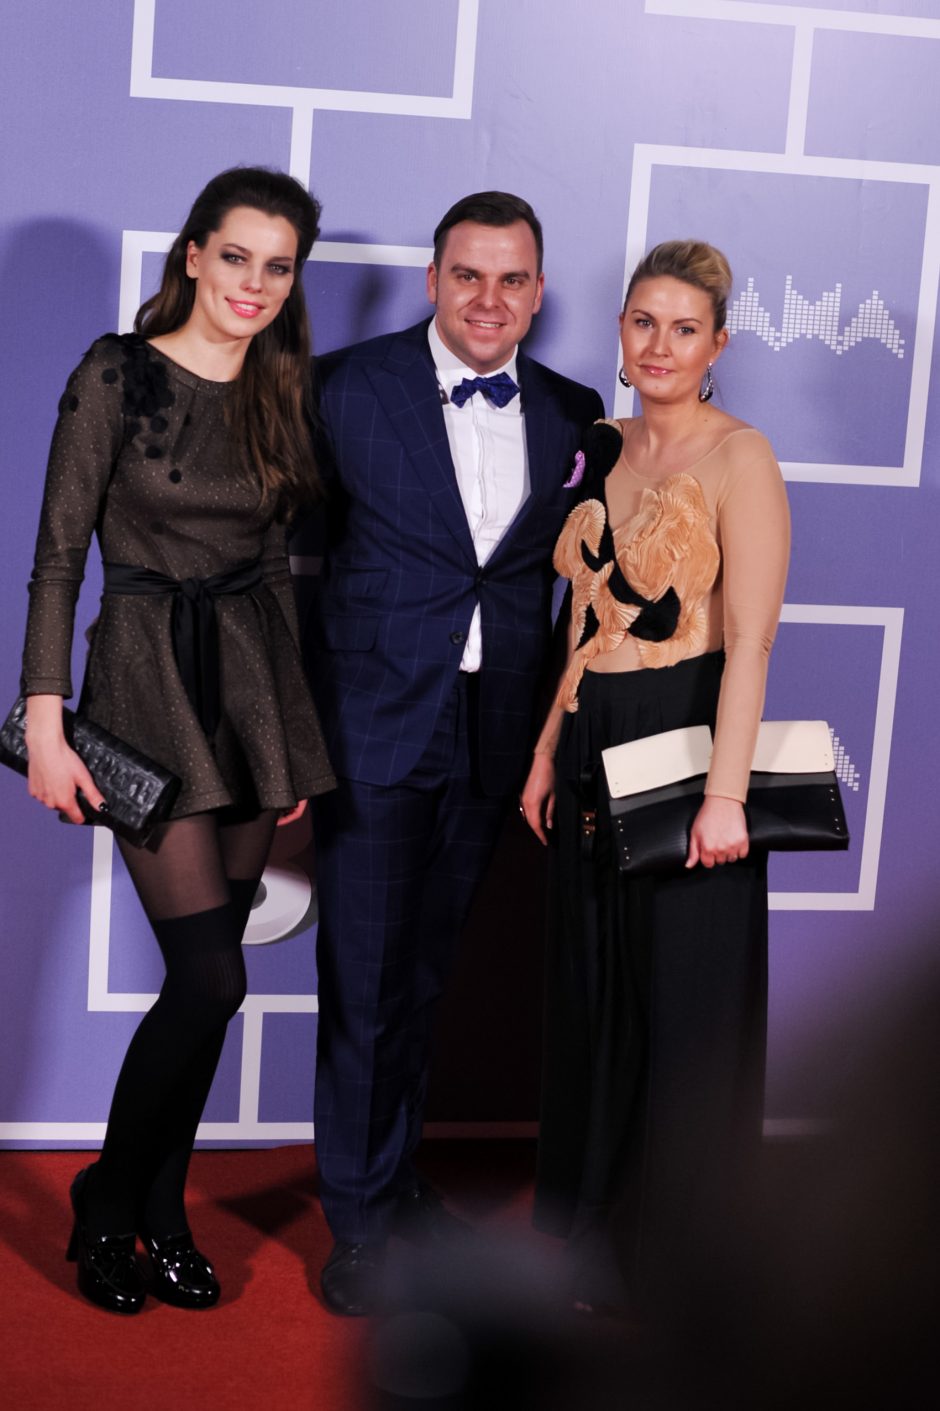 Lietuvos muzikos apdovanojimai M.A.M.A. 2013